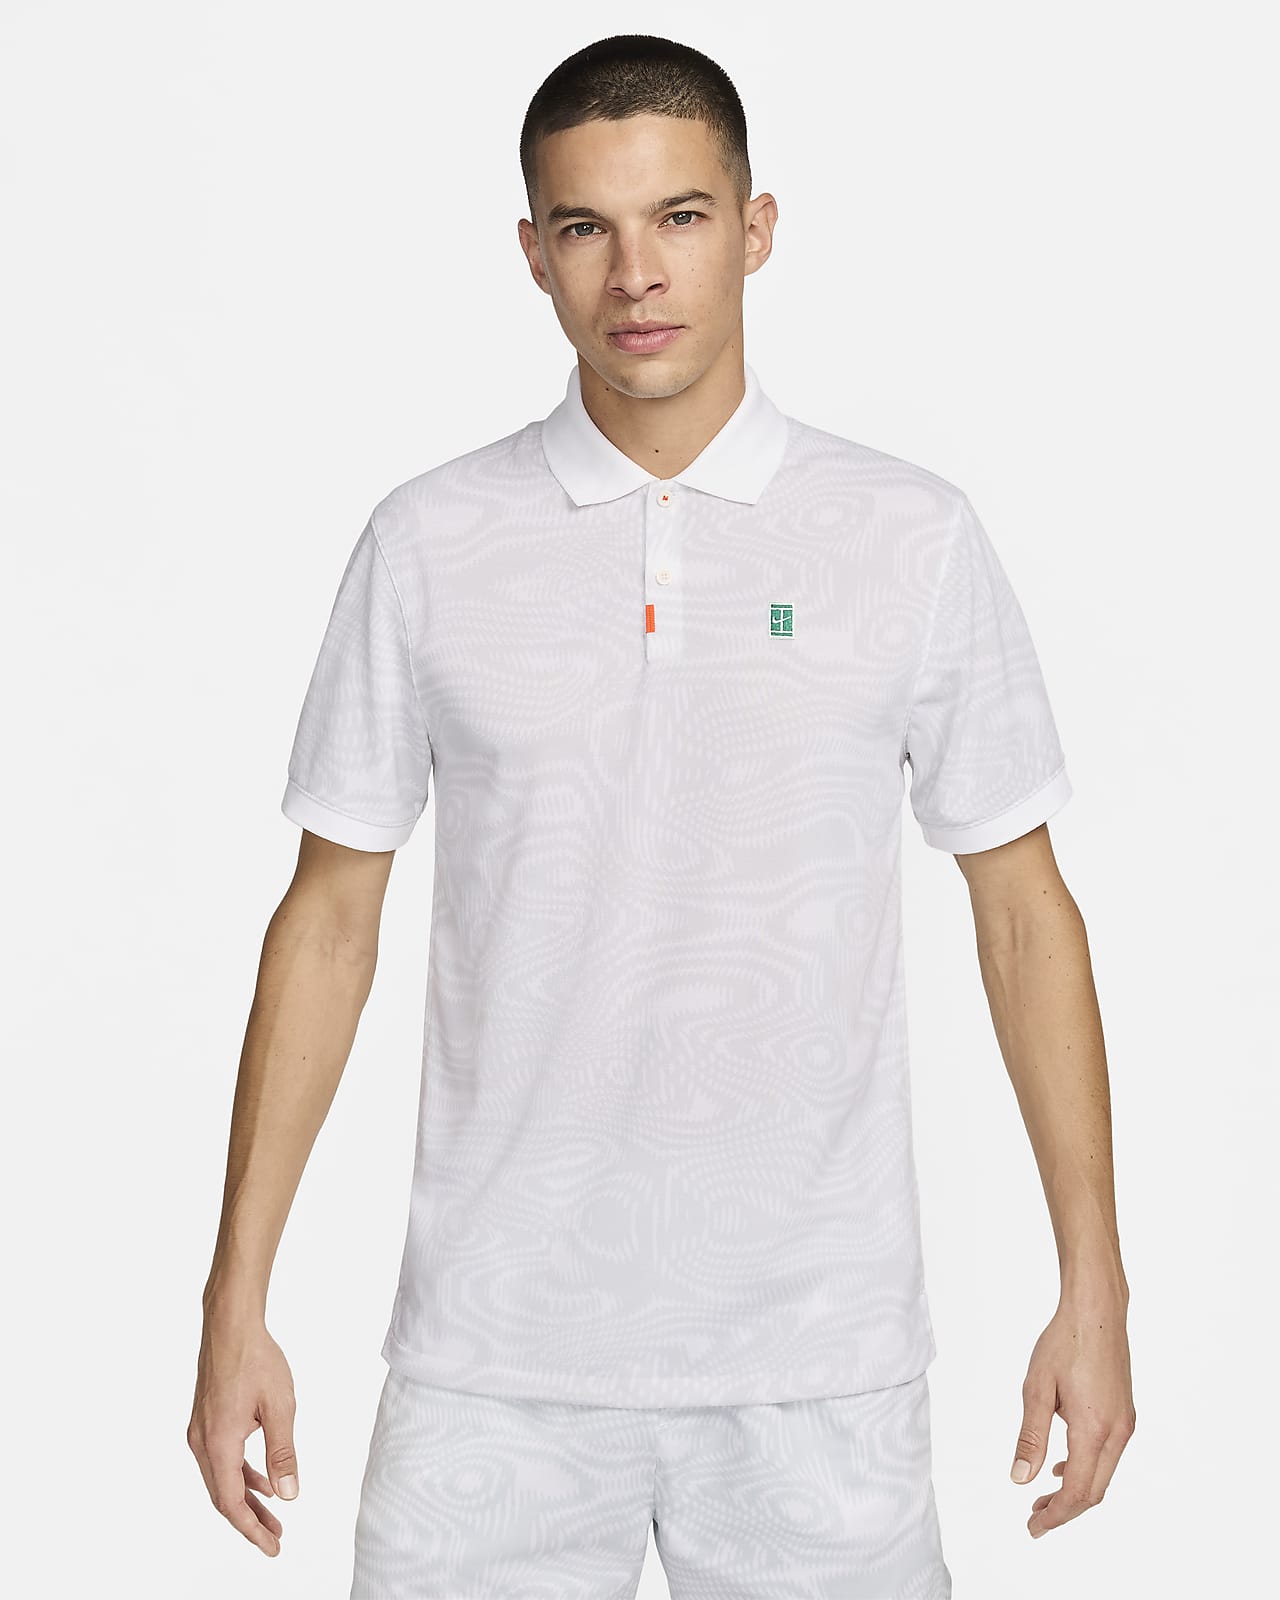 Ανδρική μπλούζα πόλο για τένις Dri-FIT The Nike Polo Heritage